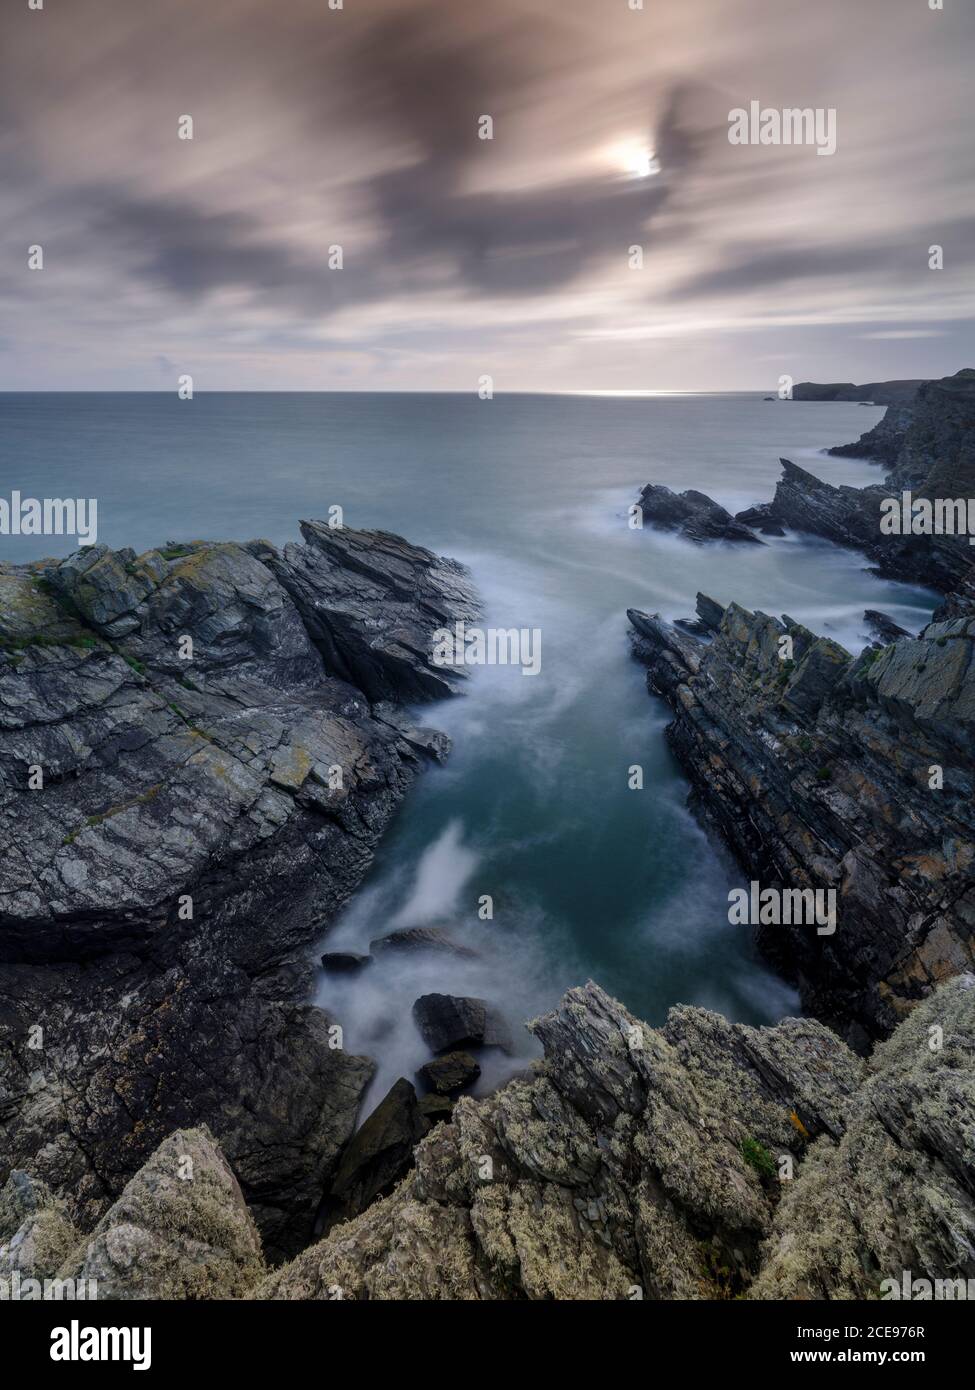 Vista lungo la costa vicino a Porth Darch su Anglesey. Foto Stock